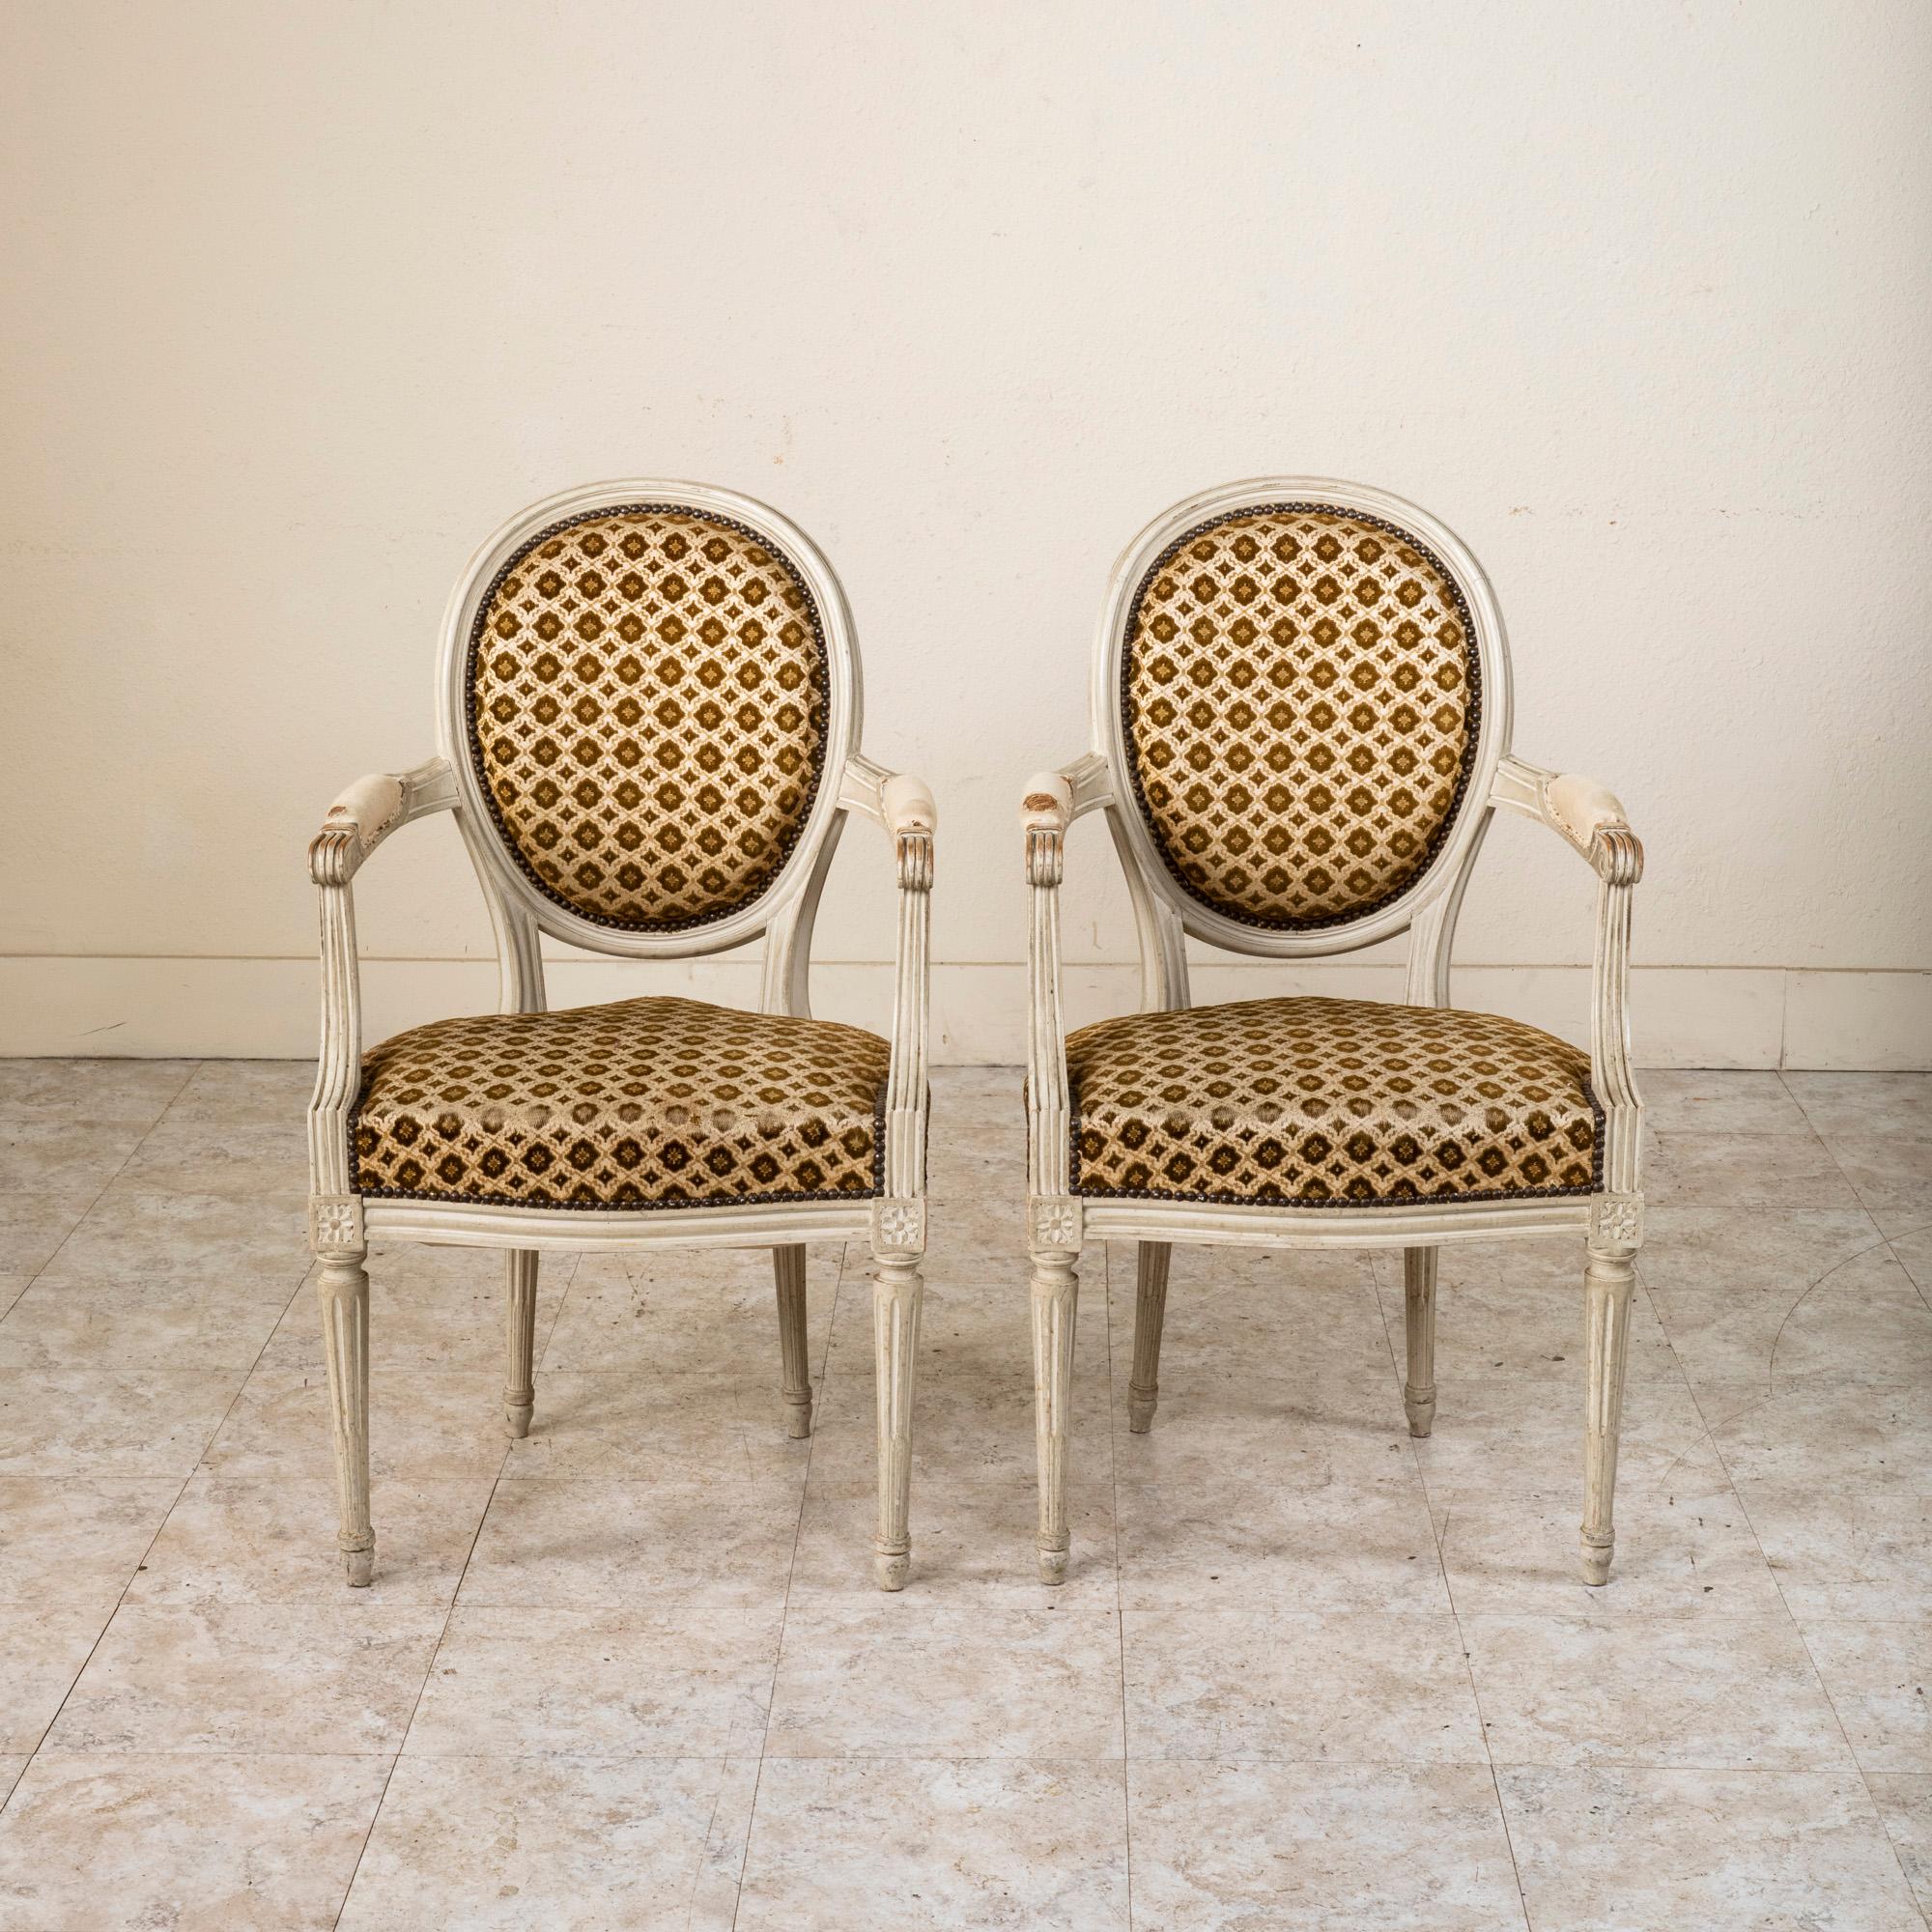 Trouvée en Normandie, France, cette paire de fauteuils cabriolets de style Louis XVI présente une finition patinée d'origine. Cette paire classique présente des dossiers en médaillon, des accoudoirs cannelés avec des accoudoirs à volutes et des